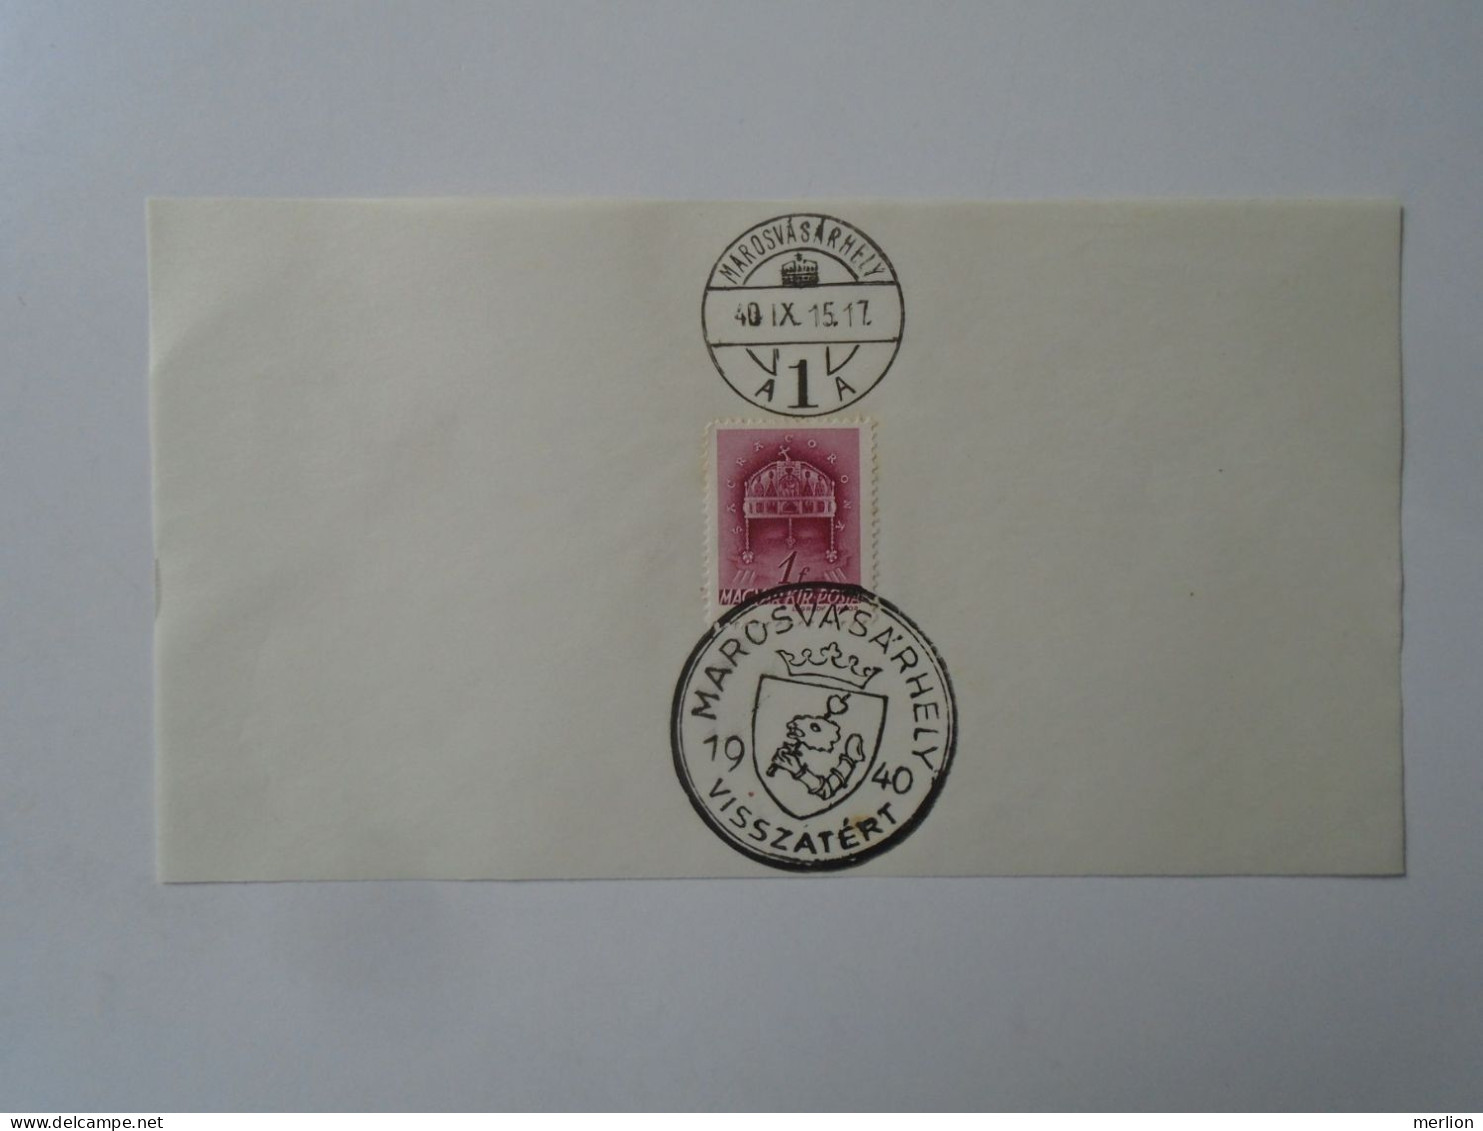 ZA451.54  Hungary -Marosvásárhely  Visszatért -Commemorative Postmark 1940 - Postmark Collection